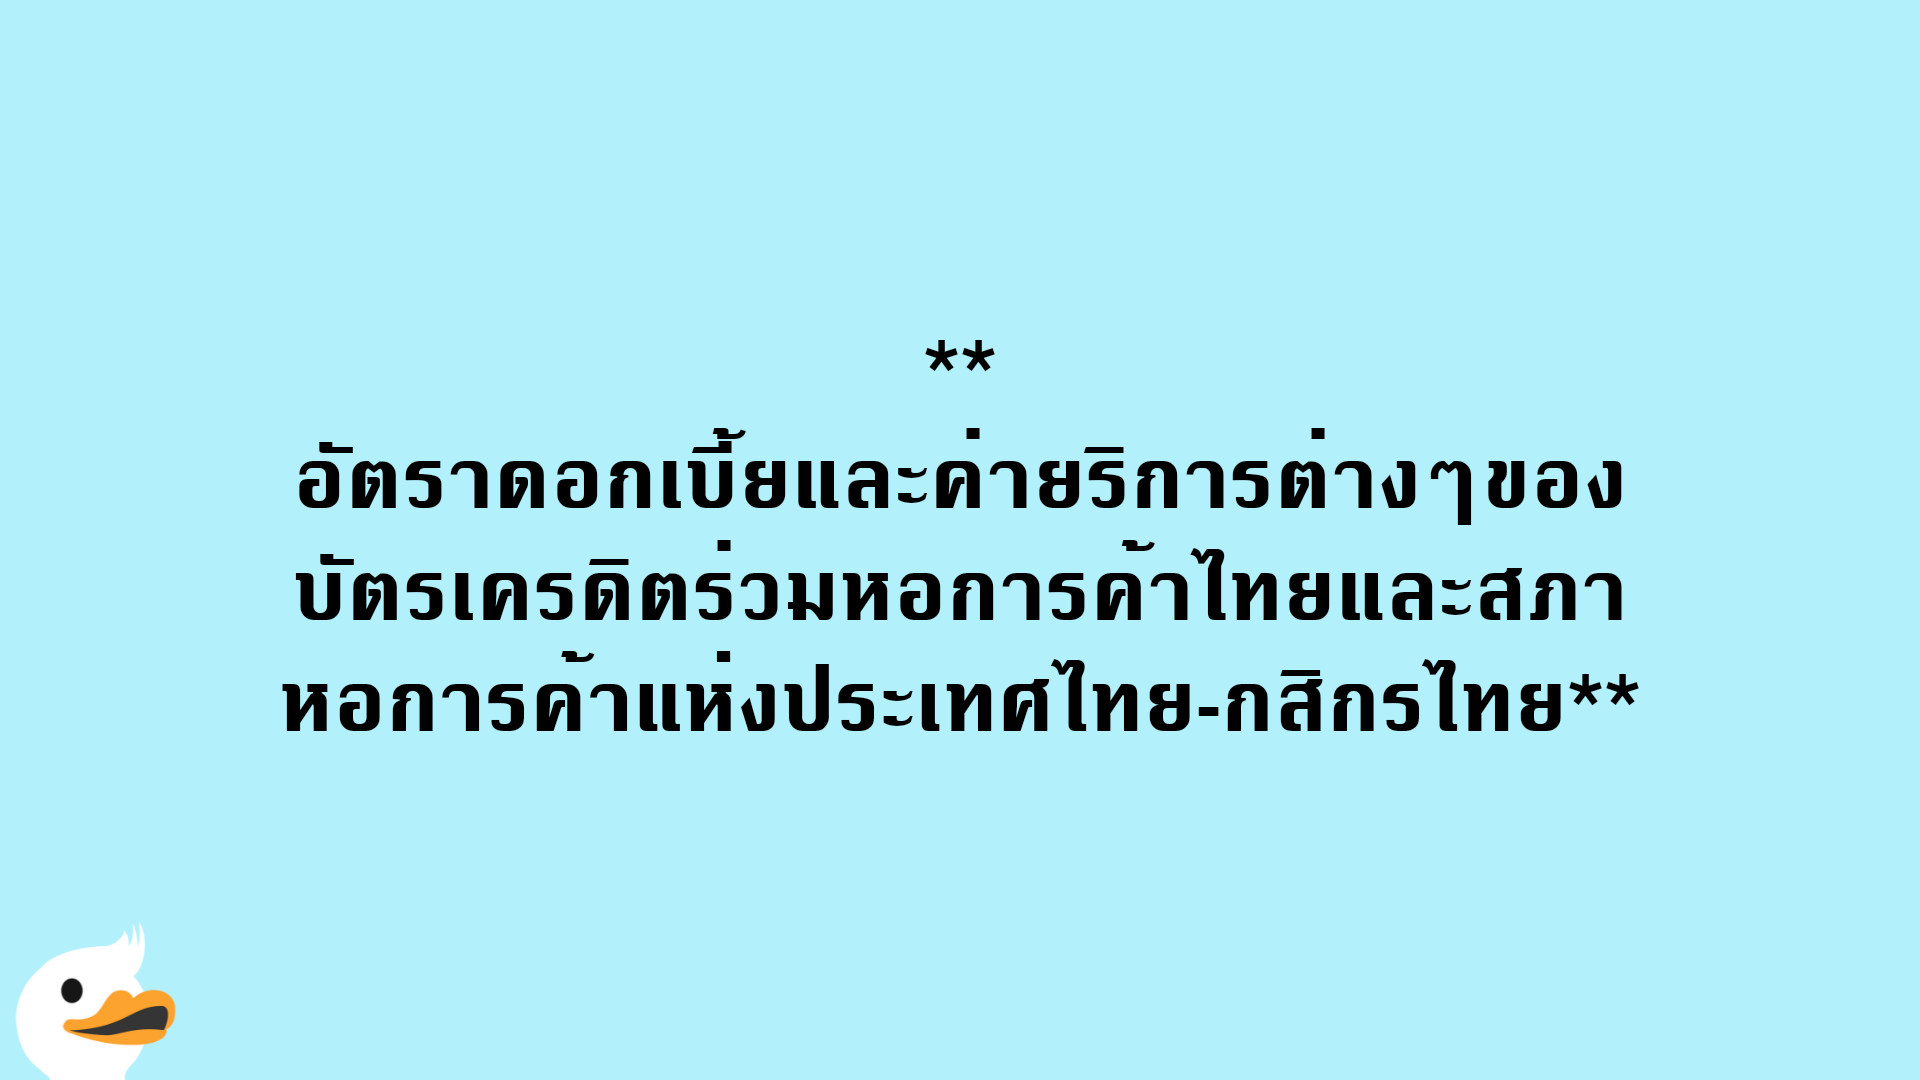 อัตราดอกเบี้ยและค่ายริการต่างๆของบัตรเครดิตร่วมหอการค้าไทยและสภาหอการค้าแห่งประเทศไทย-กสิกรไทย